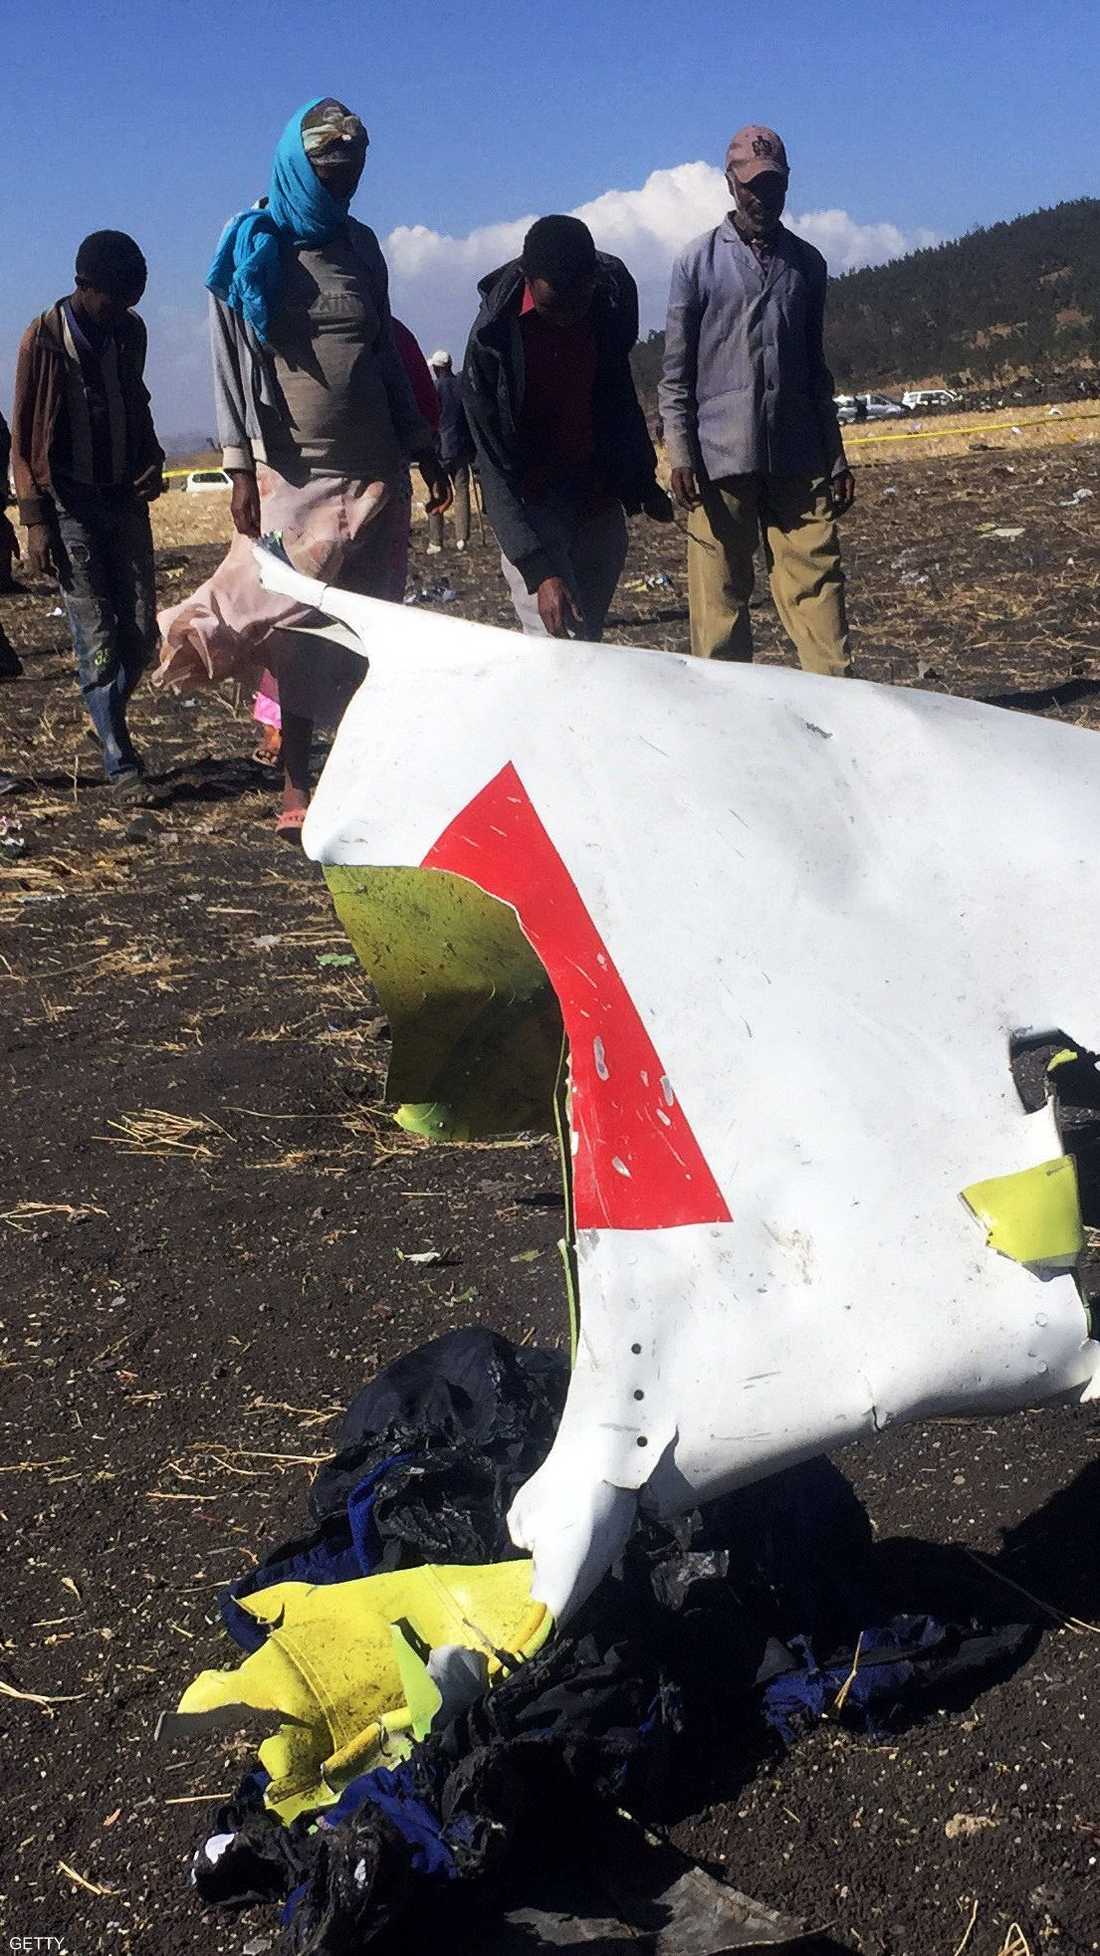 فقد الاتصال بالطائرة بعد 6 دقائق من إقلاعها وسقطت في منطقة تبعد 60 كلم عن العاصمة الإثيوبية أديس أبابا.